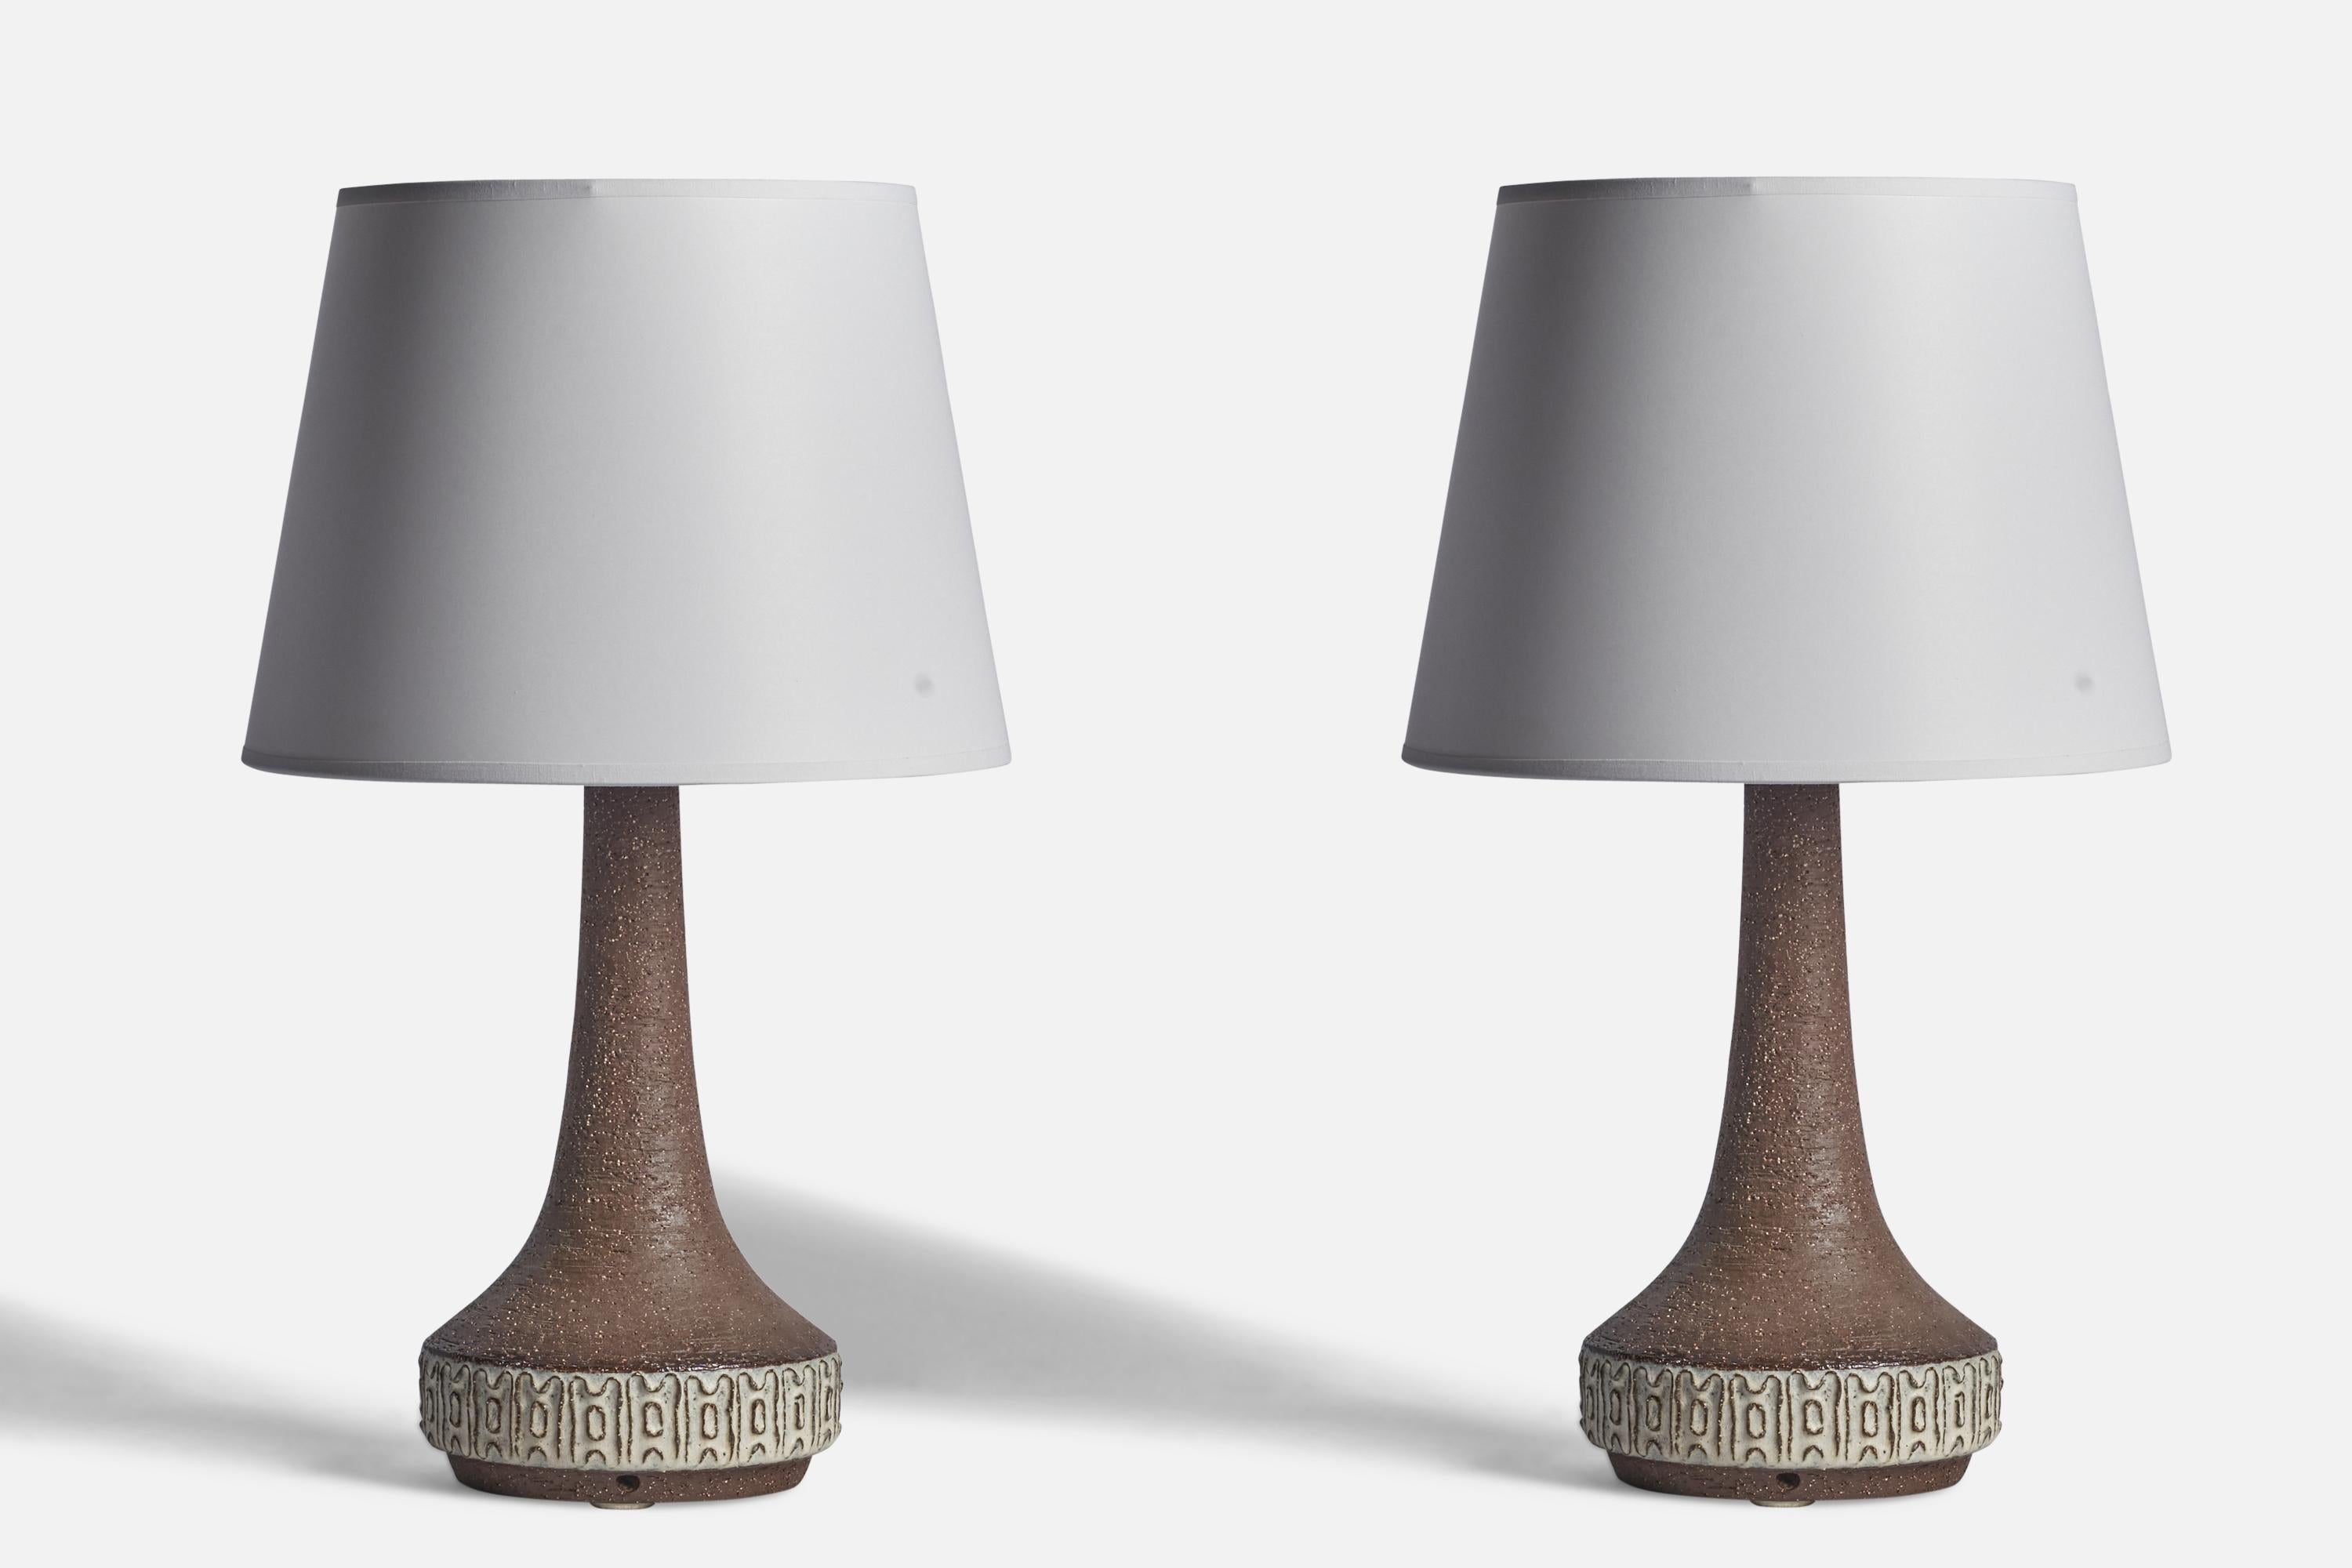 Coppia di lampade da tavolo in gres smaltato grigio disegnate e prodotte da Michael Andersen, Bornholm, Danimarca, anni '60.

Dimensioni della lampada (pollici): 15,5